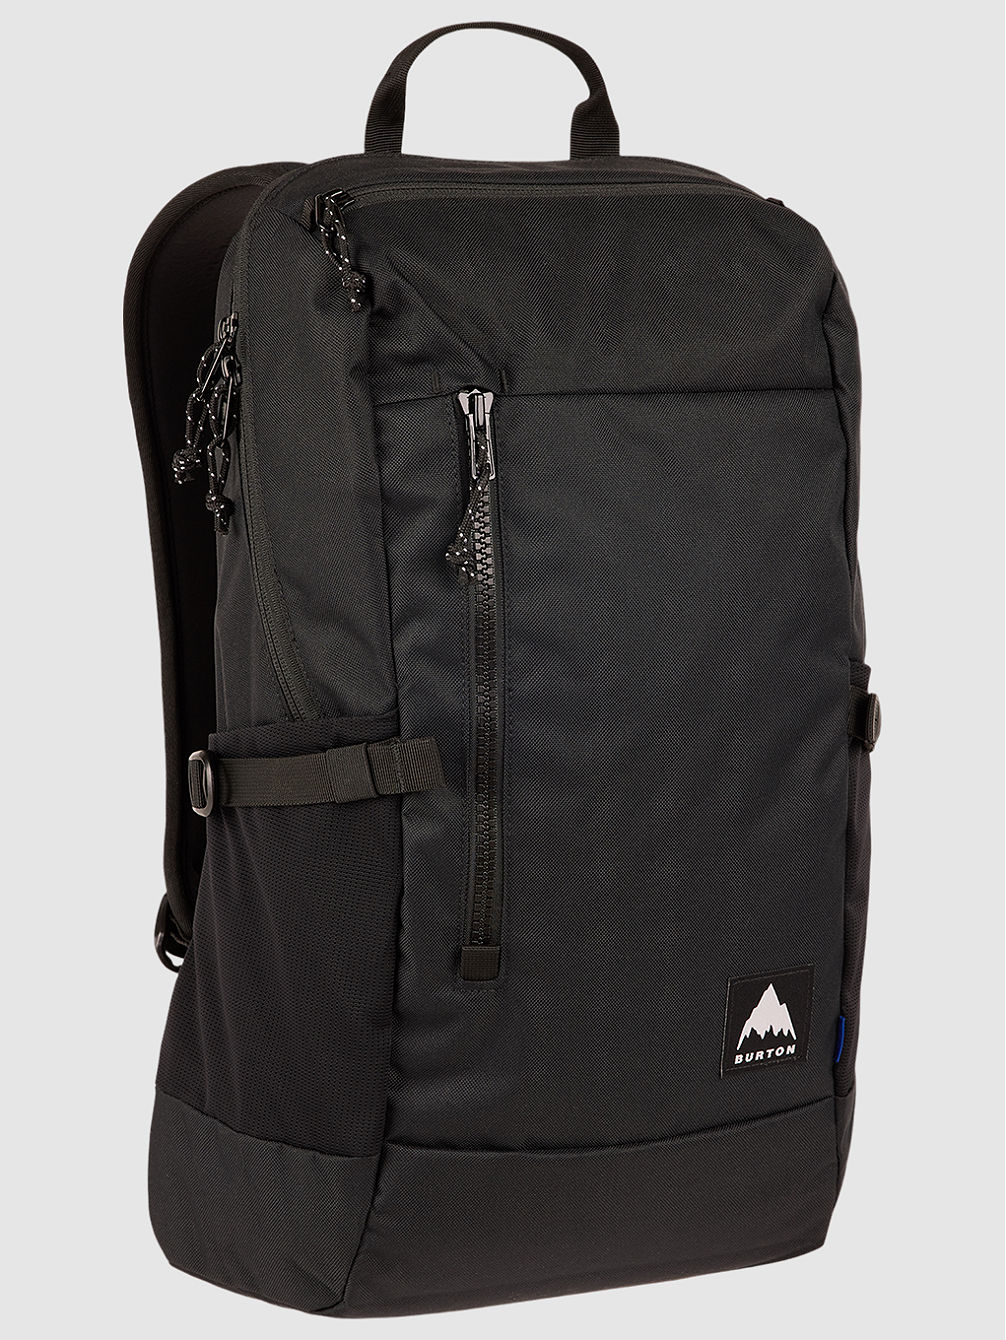 Prospect 2.0 20L Backpack